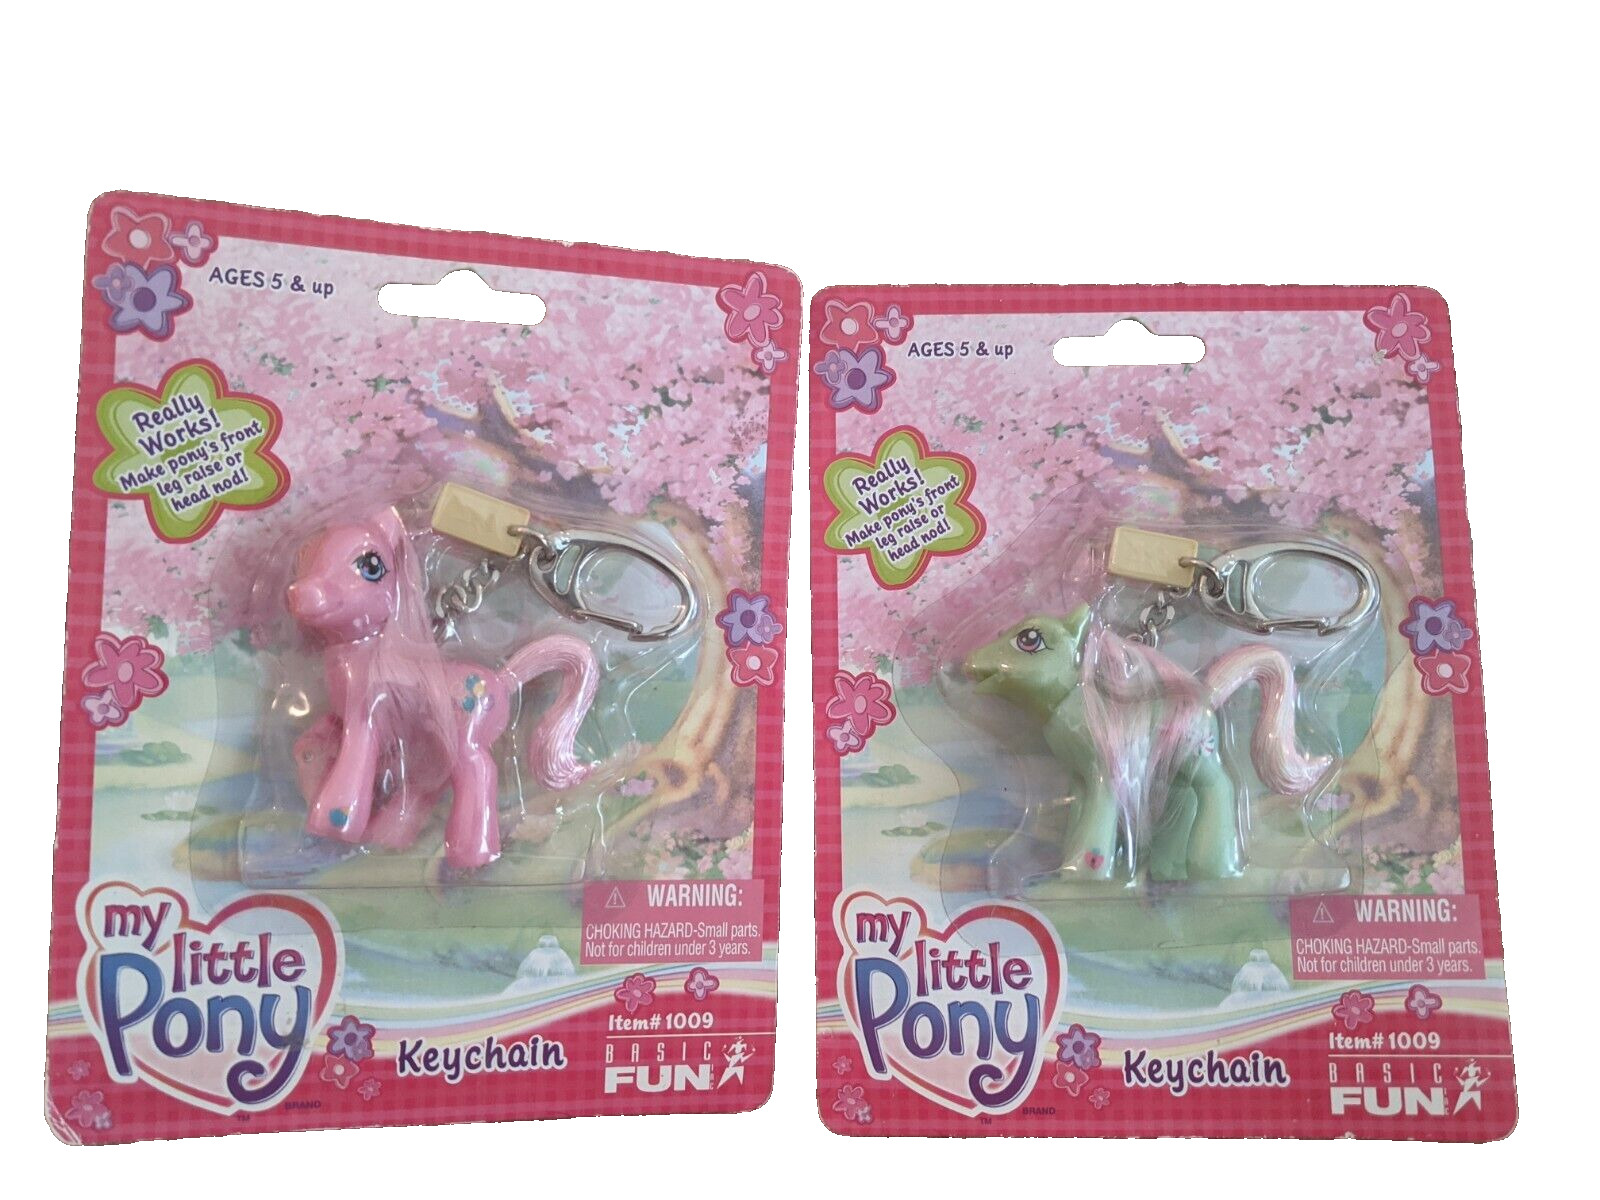 SEALED Hasbro Basic Fun My Little Pony MLP Pinkie Pie & Minty Keychains 2003